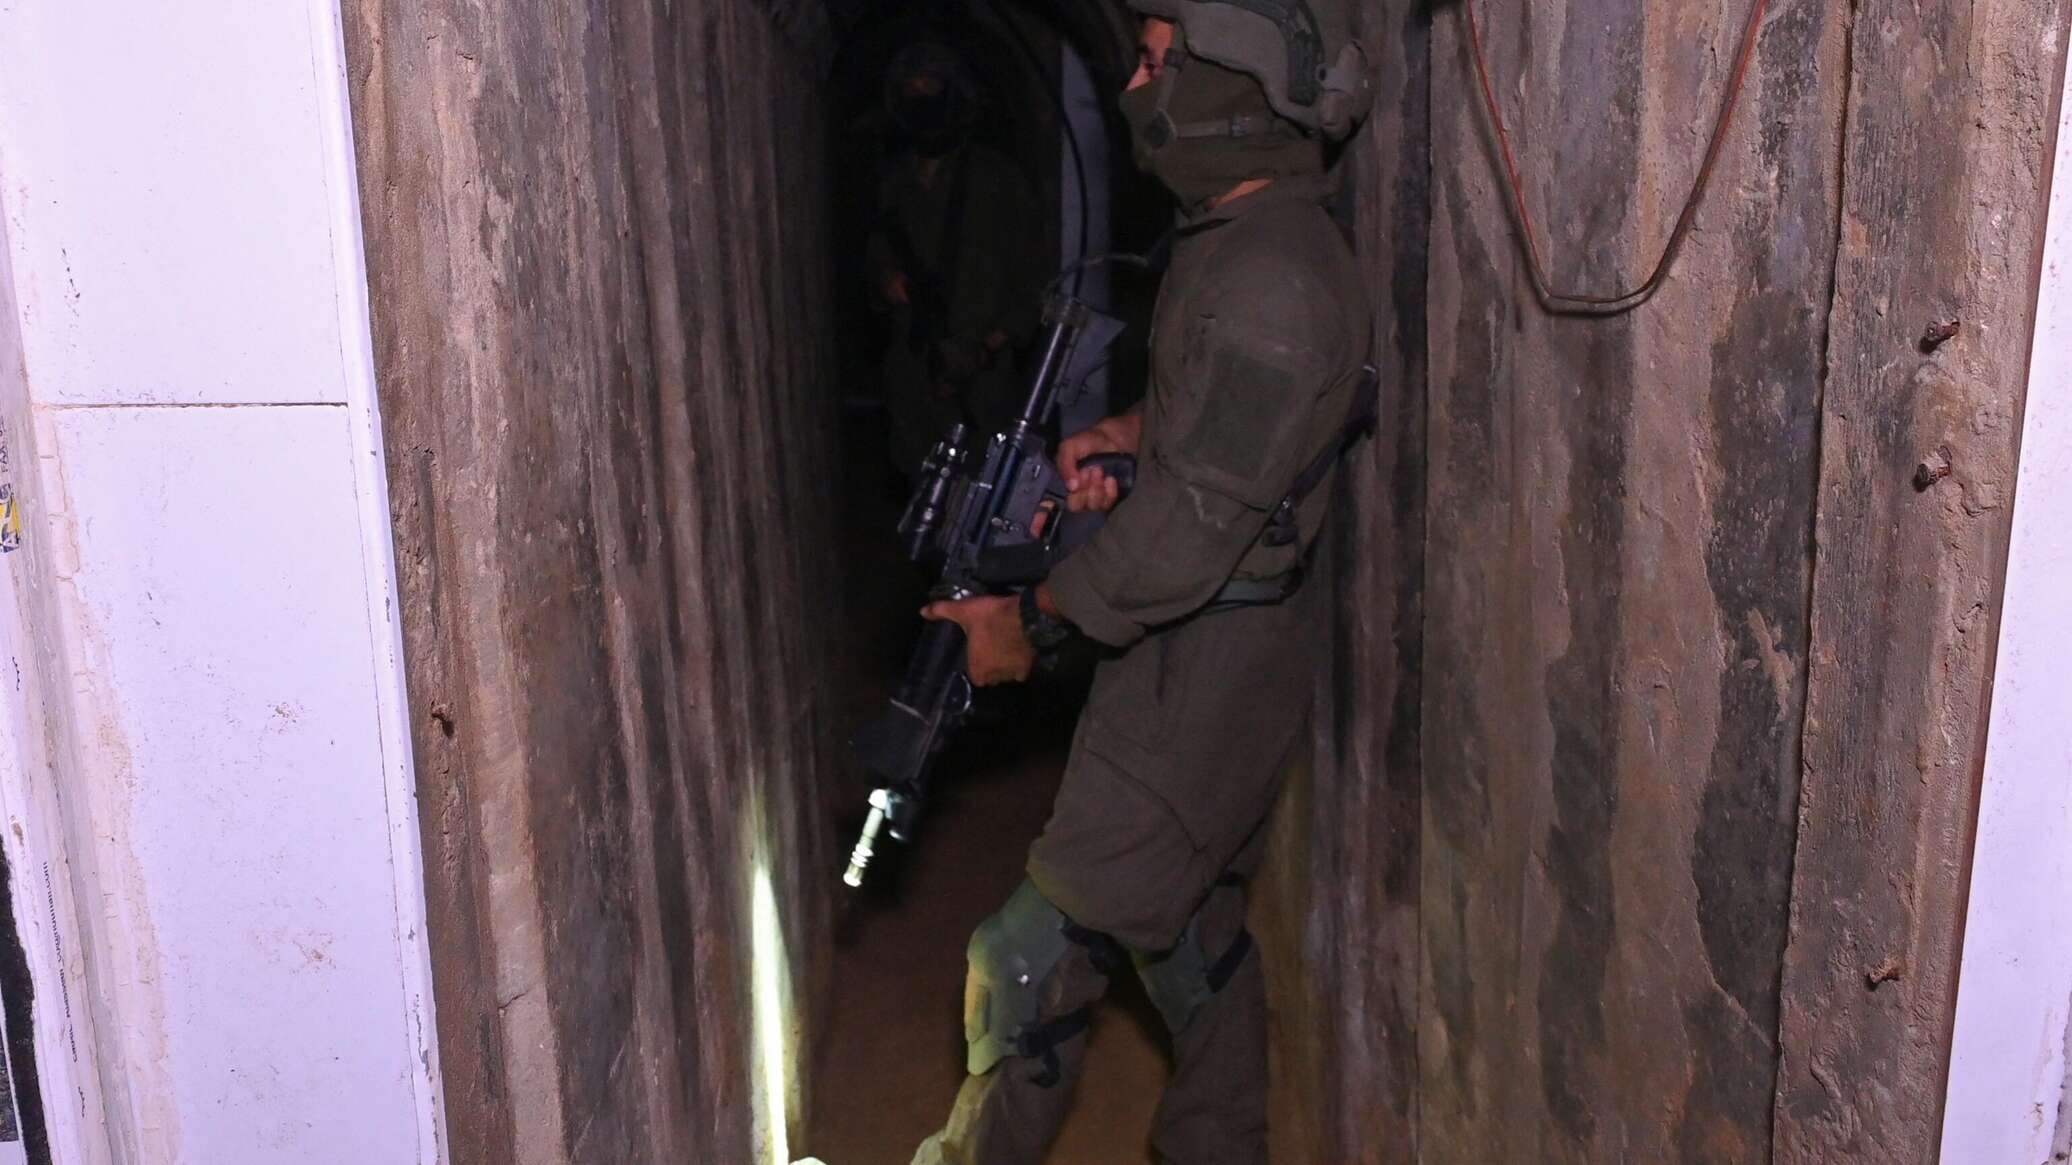 الجيش الإسرائيلي يعلن استهداف 50 هدفا لـ"حماس" خلال 24 ساعة والقضاء على 20 شخصا من الحركة